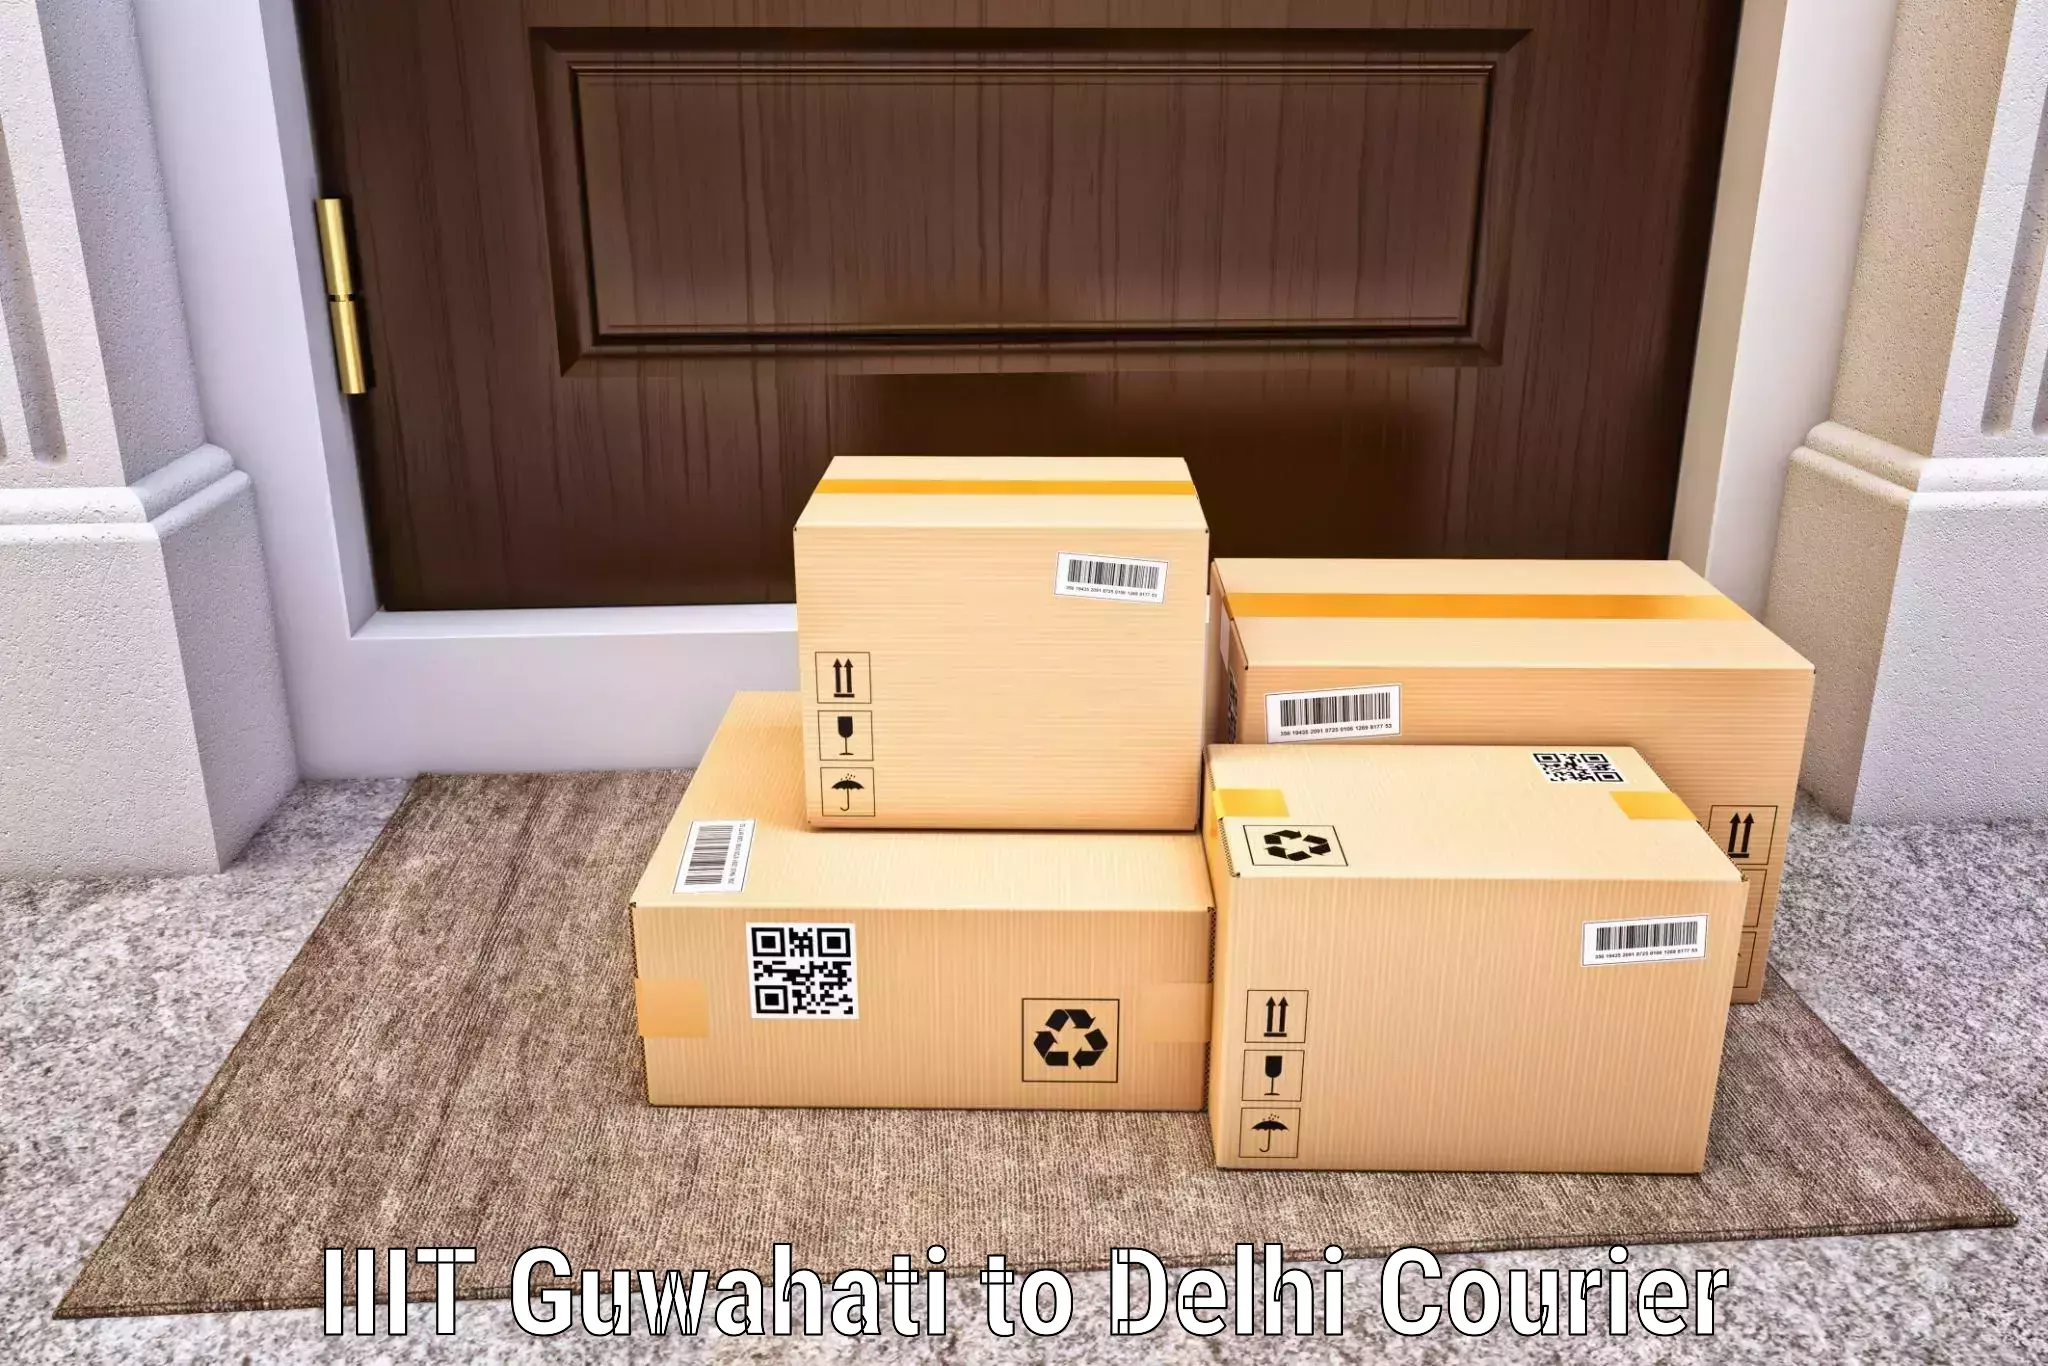 Tech-enabled shipping IIIT Guwahati to Delhi